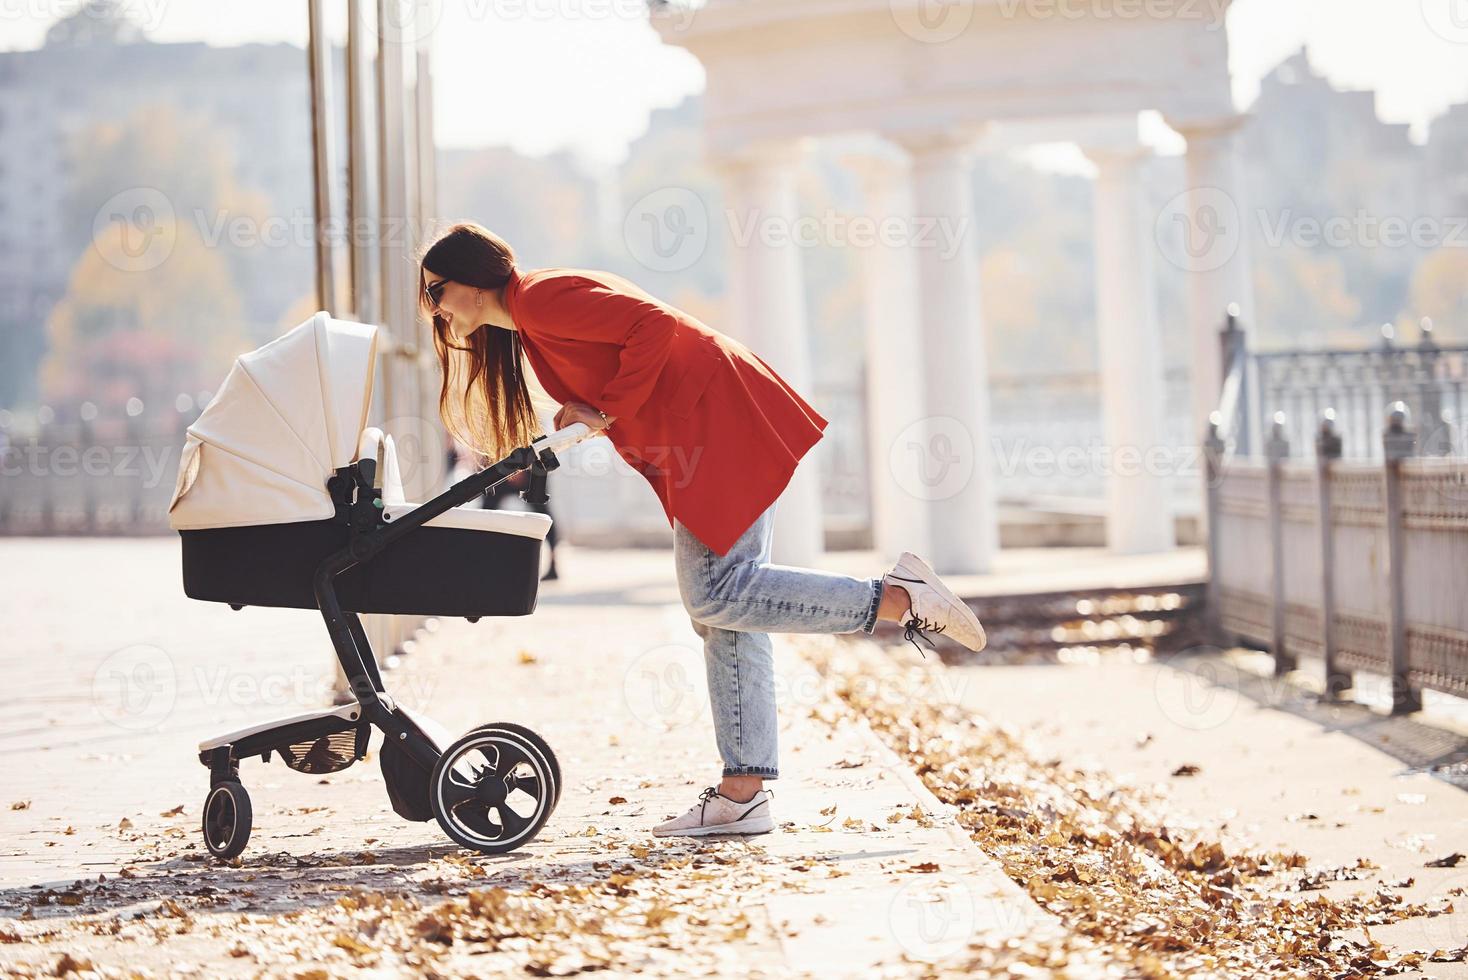 mère en manteau rouge se promener avec son enfant dans le landau dans le parc à l'automne photo